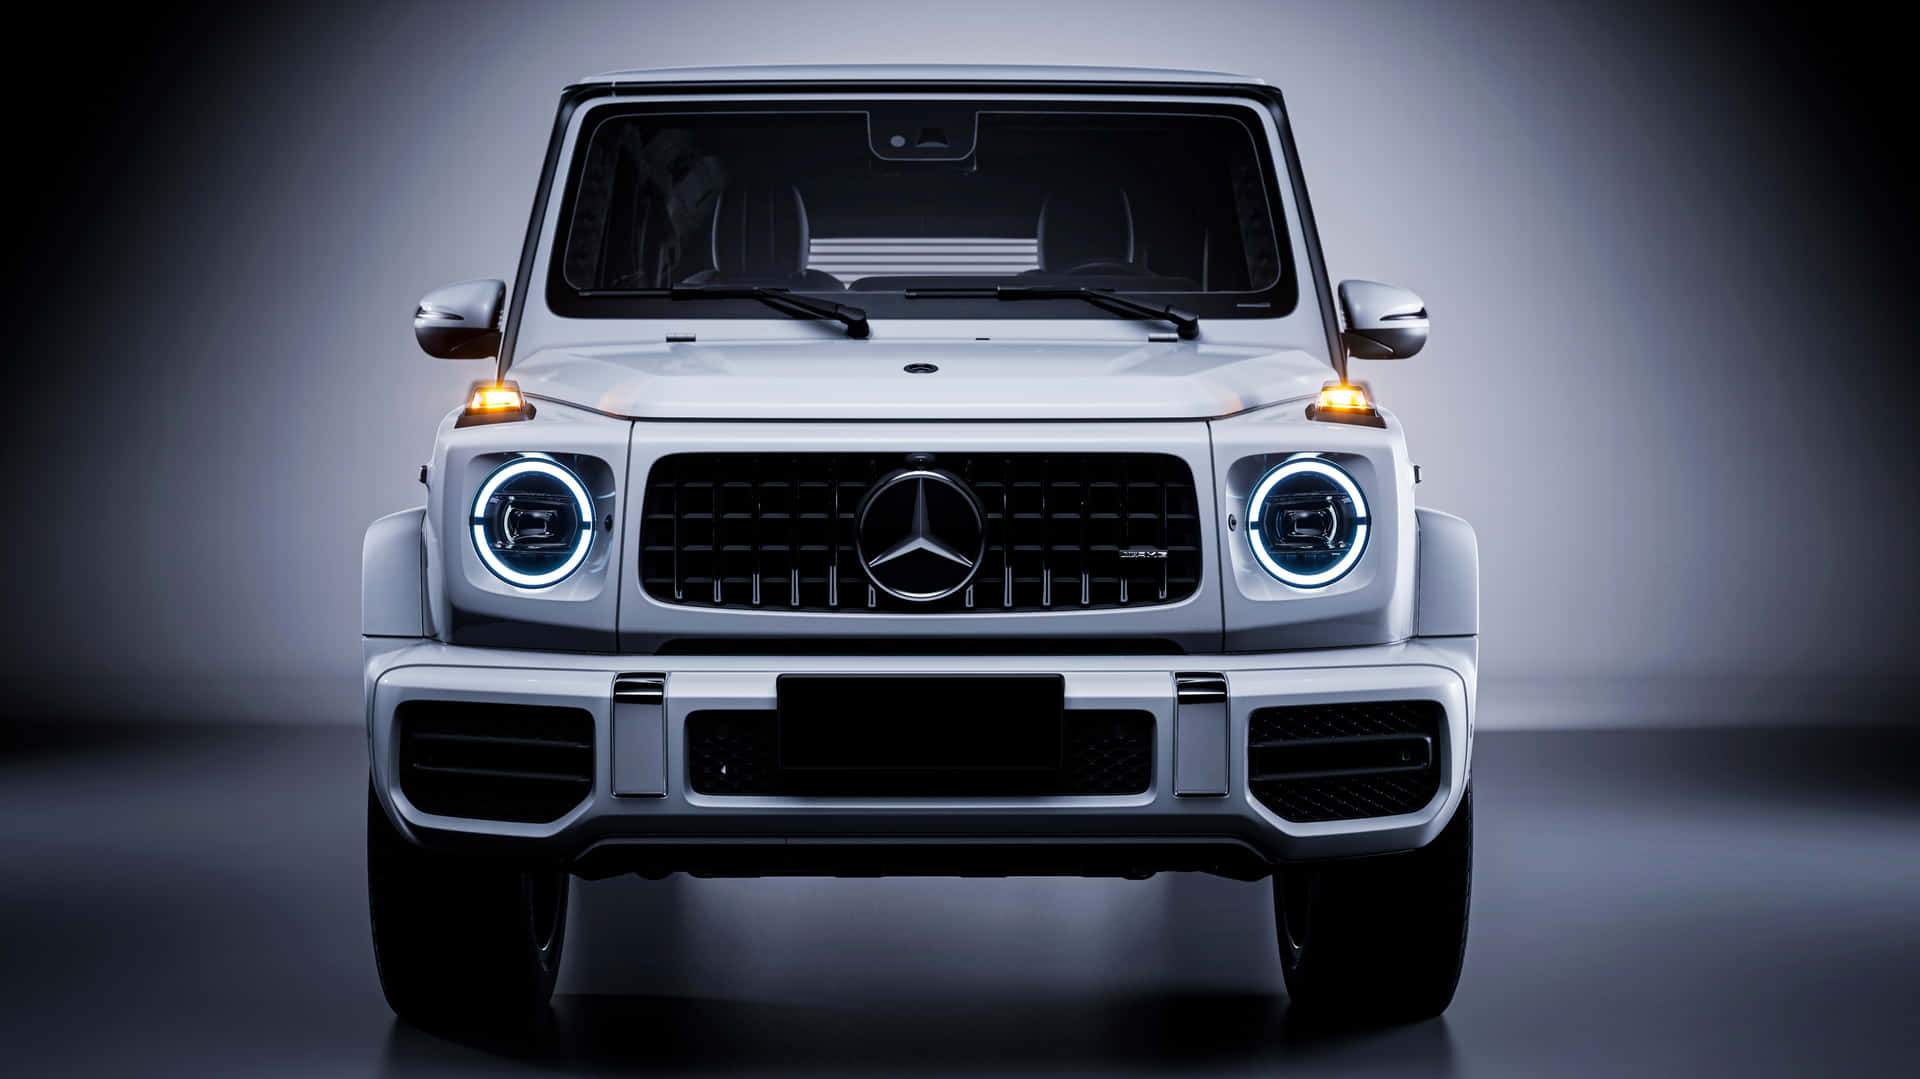 Nyd magten, nyd kvaliteten - Kør en Mercedes-Benz. Wallpaper